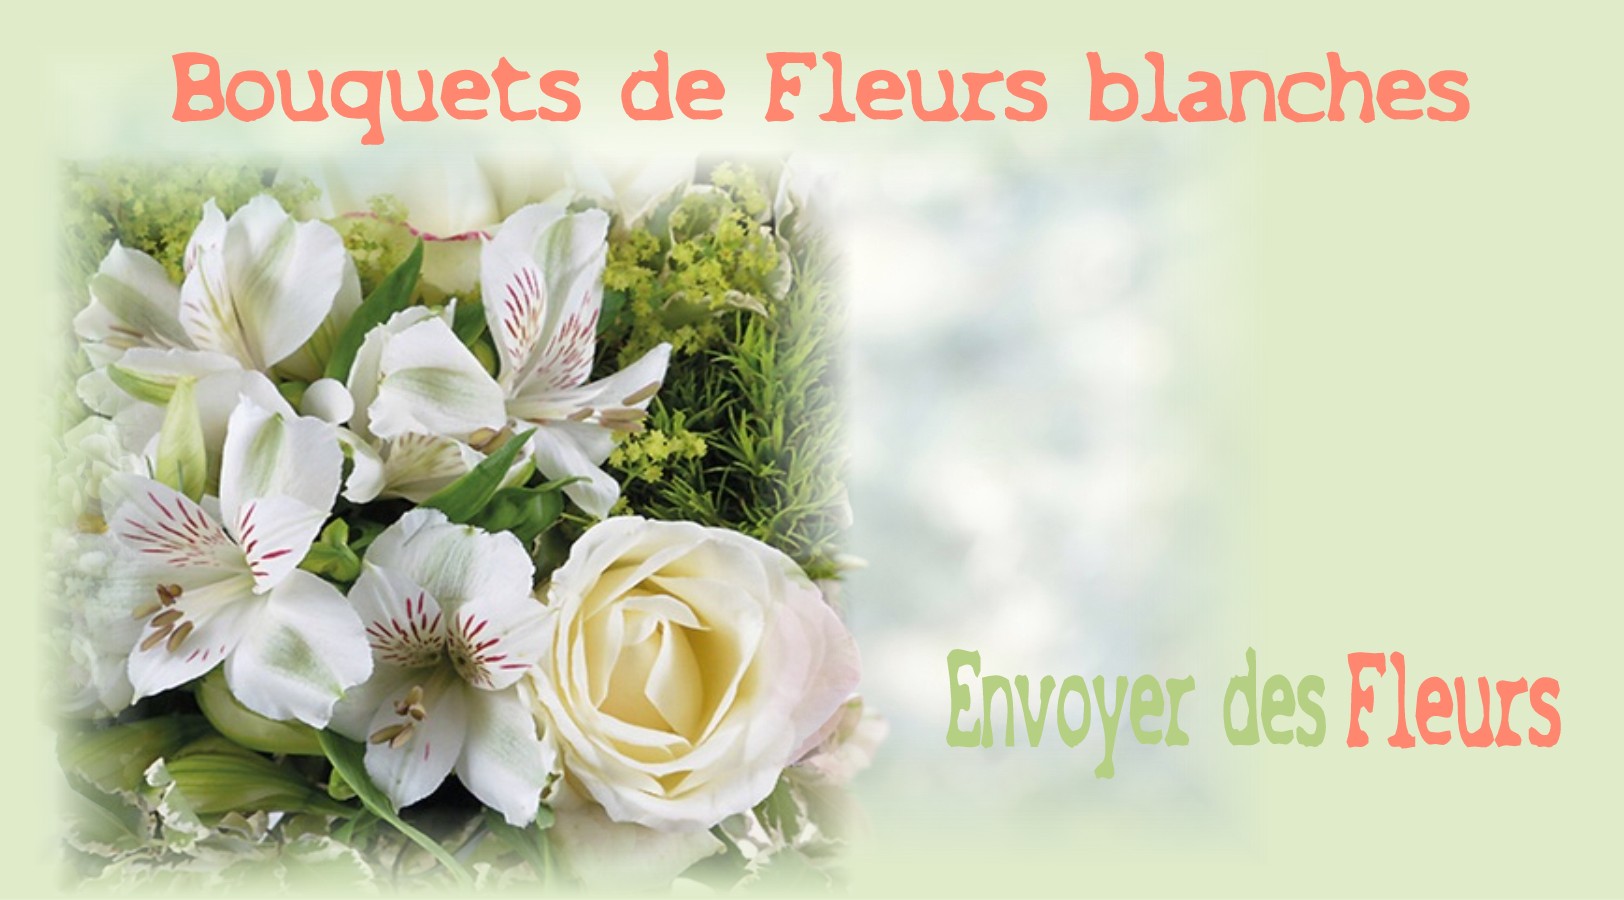 BOUQUETS DE FLEURS BLANCHES -FLEURISTE LYON (69) - ENVOYER DES FLEURS